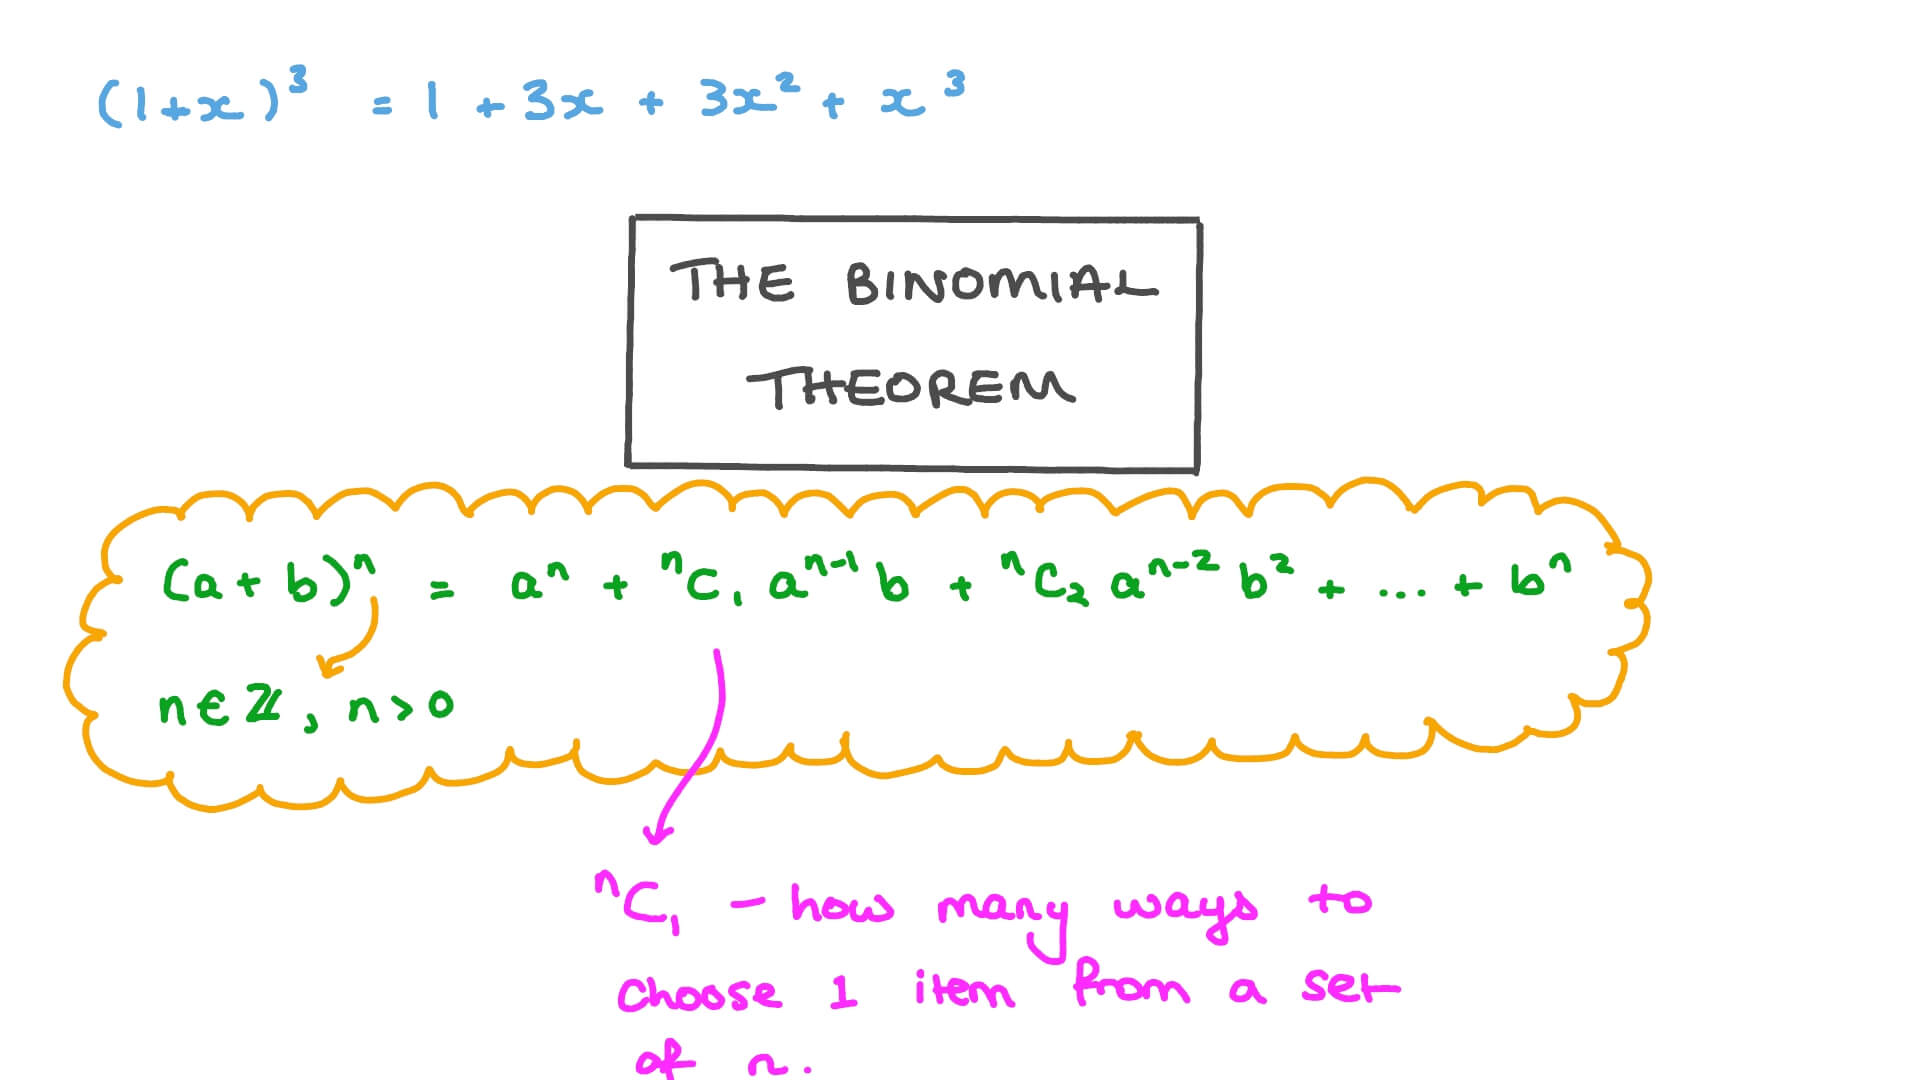 Definición del Teorema del Binomio